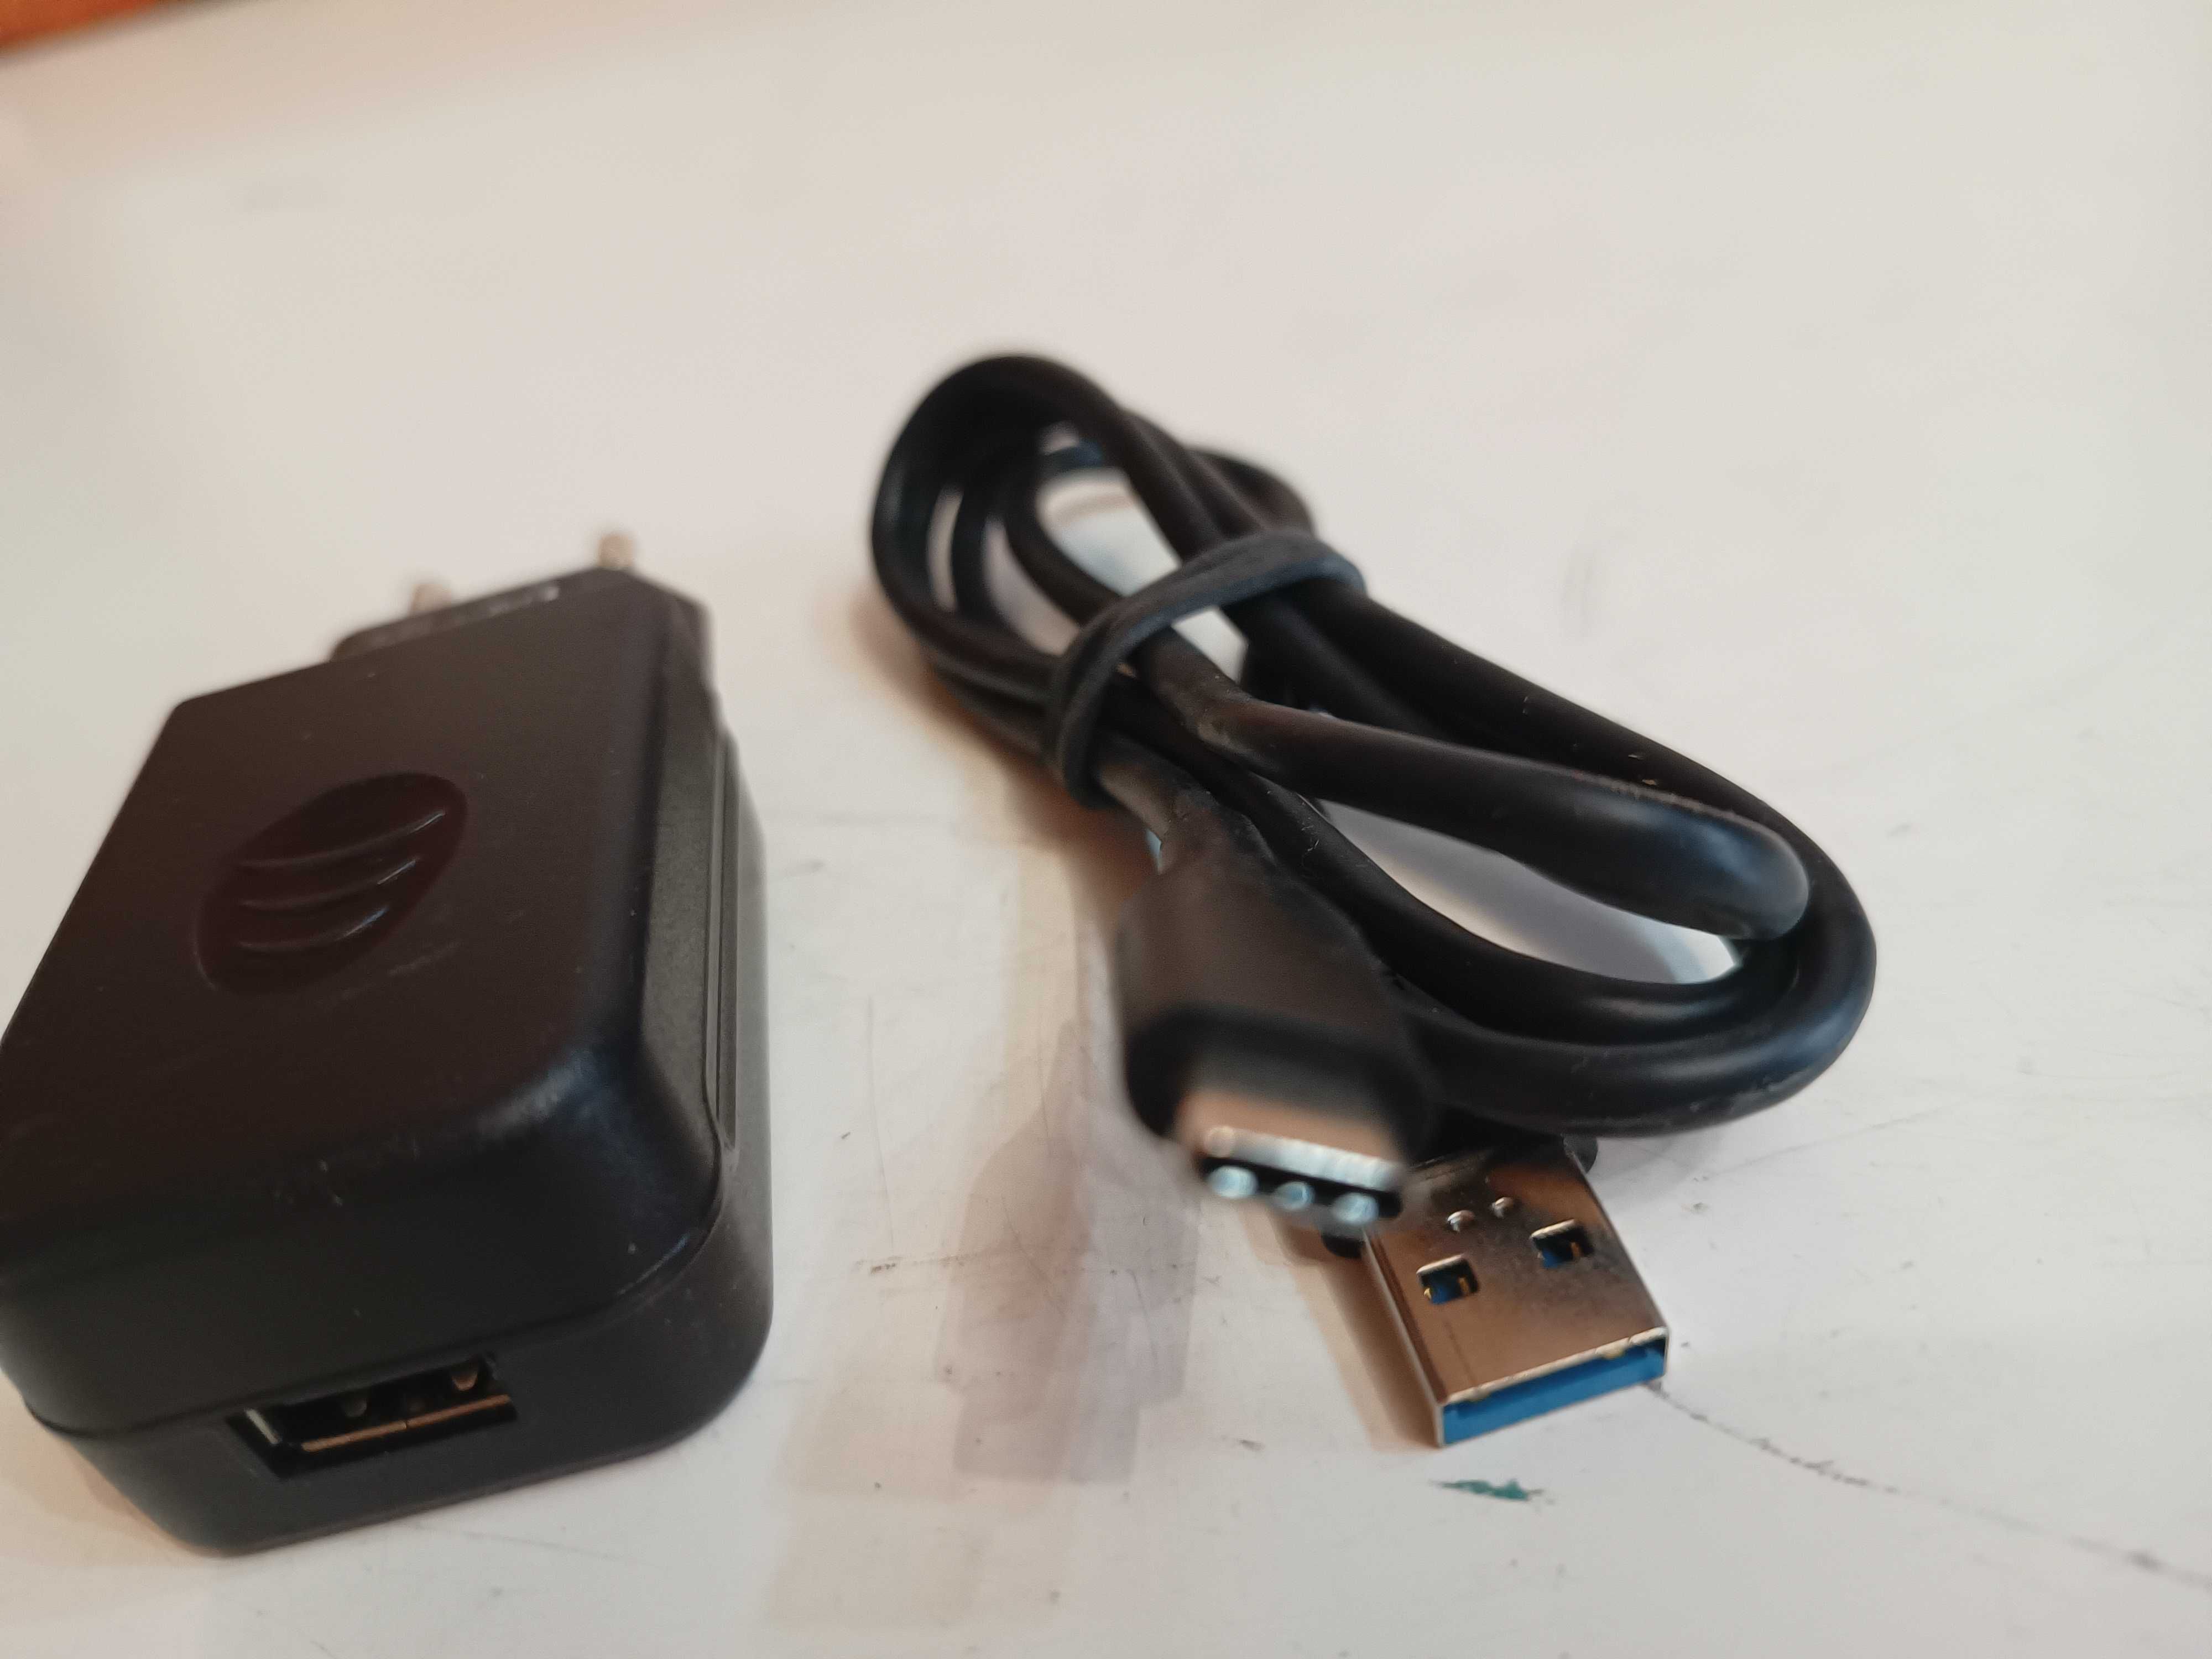 Zasilacz ( ładowarka ) z kablem USB C